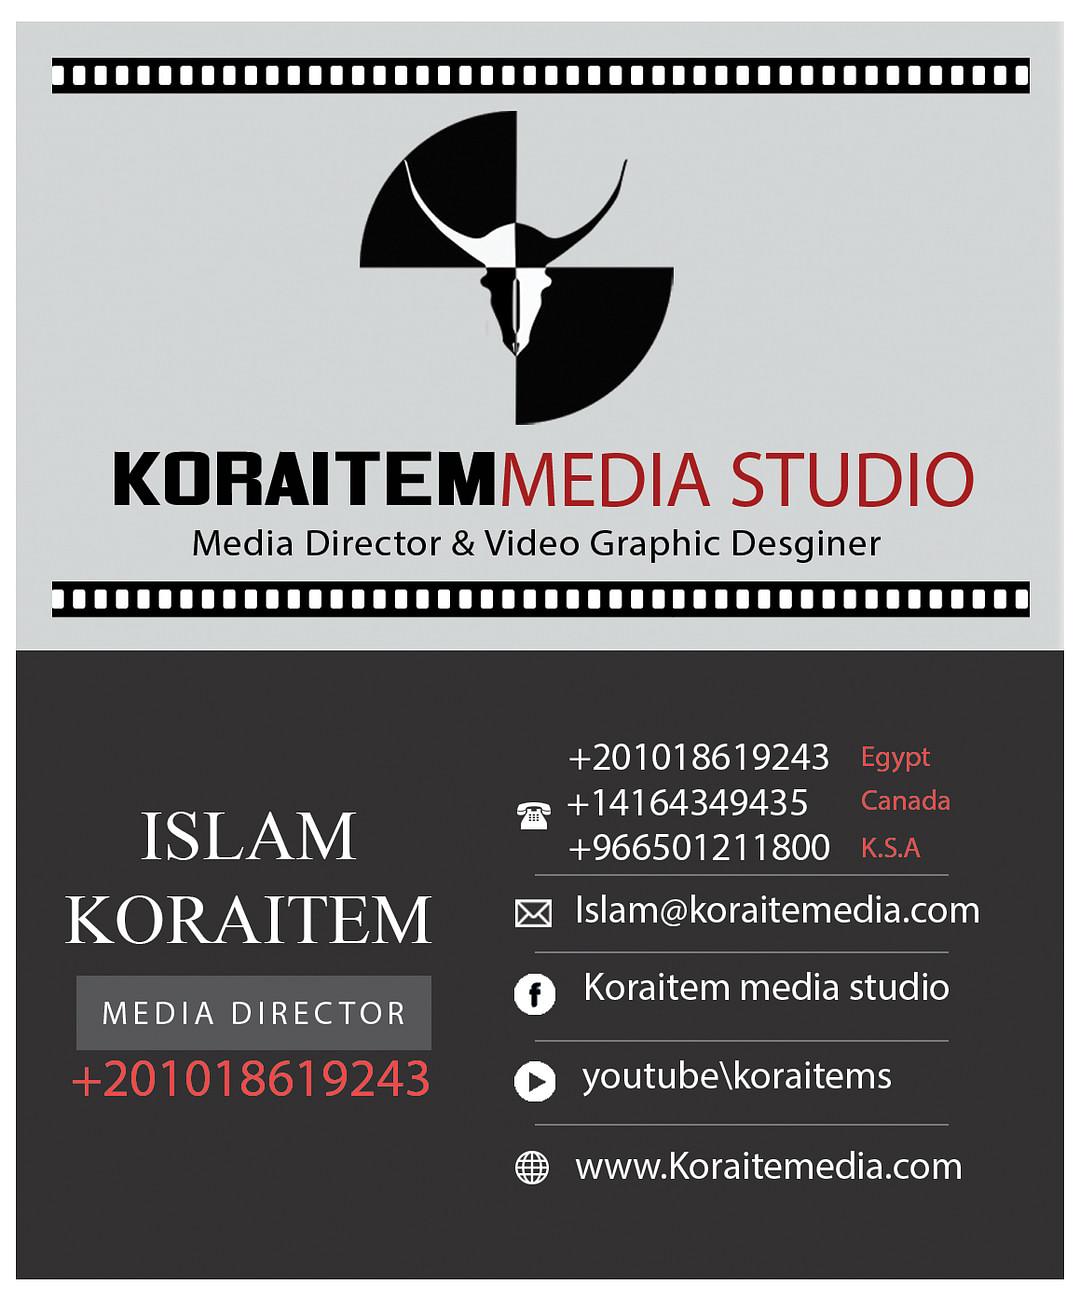 Koraitem Media Studios cover